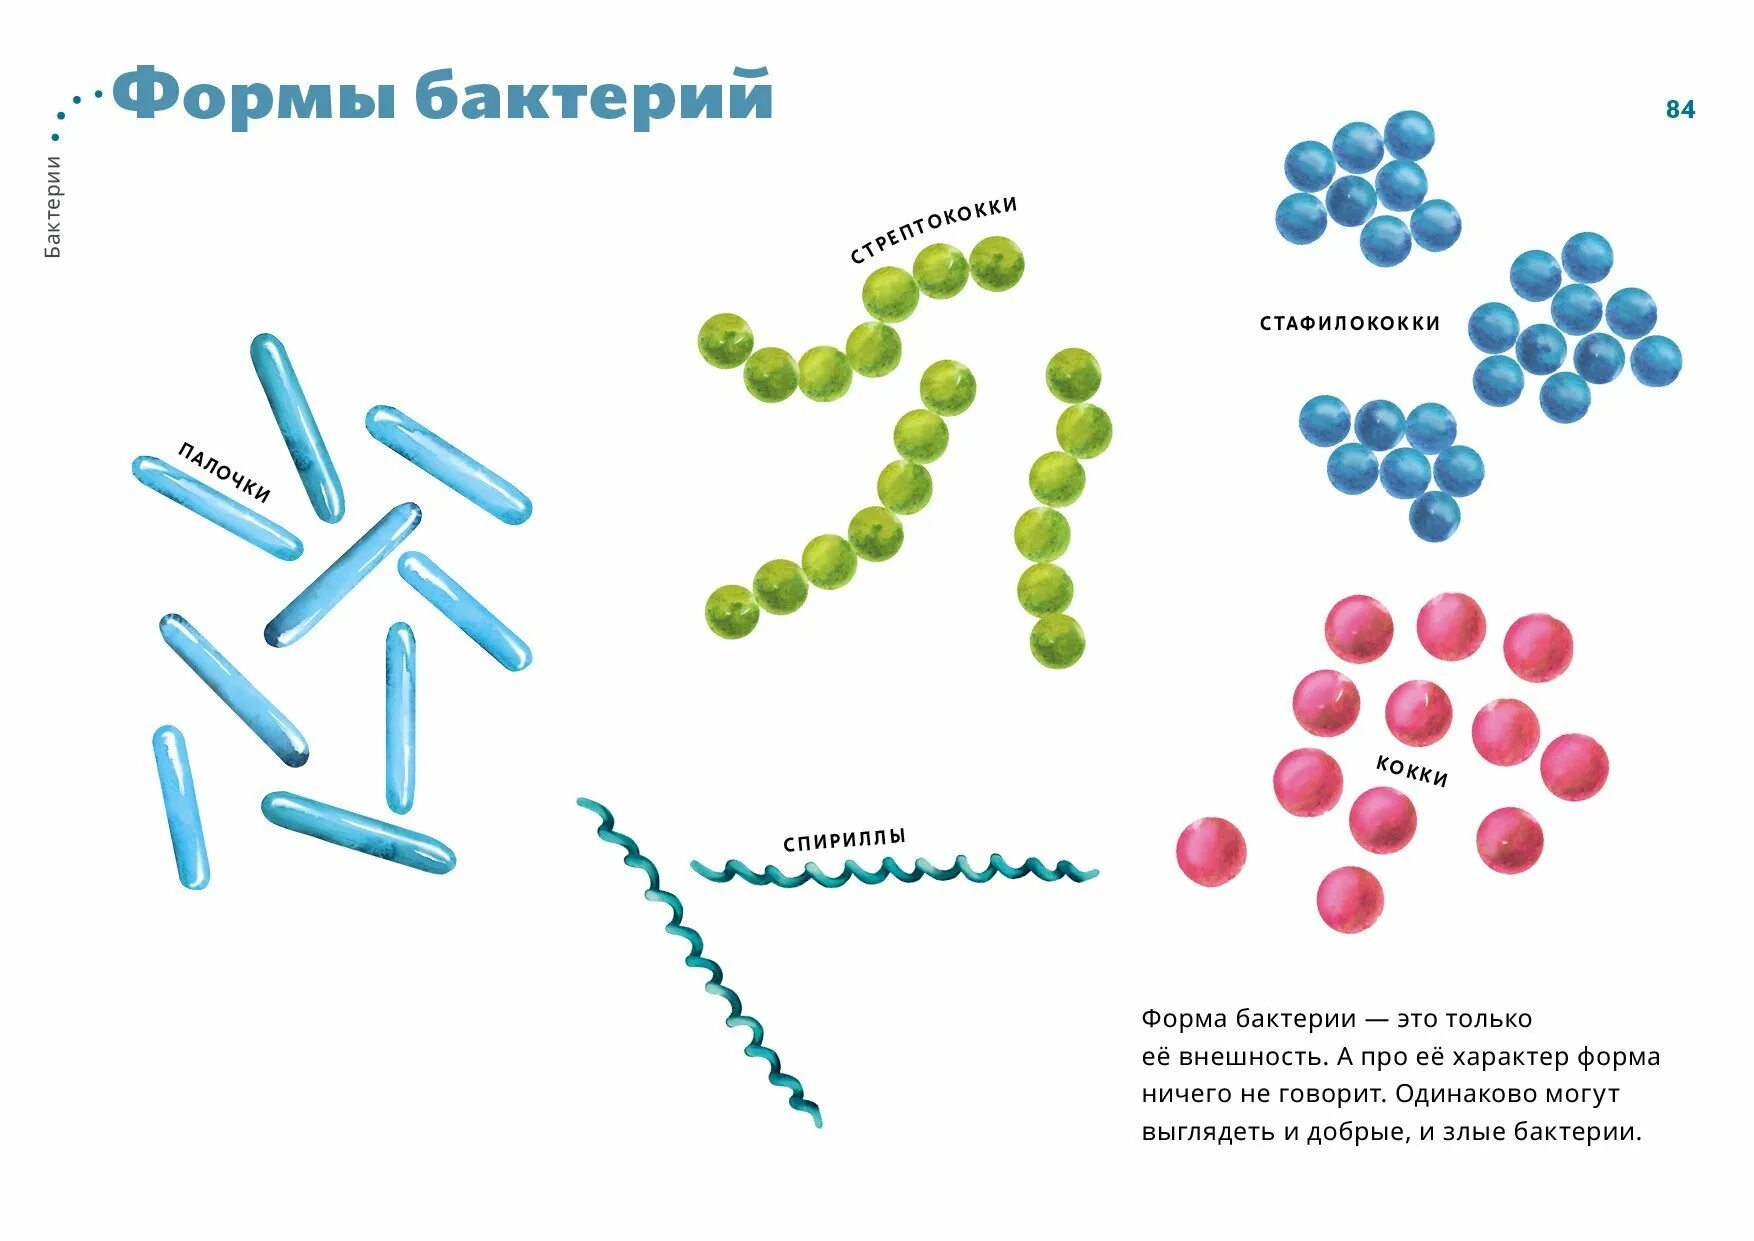 Бактерии известные виды. Формы бактериальных клеток. Формы бактериальных клеток кокки. Формы бактериальных клеток 5. Формы бактерий и их названия схема.